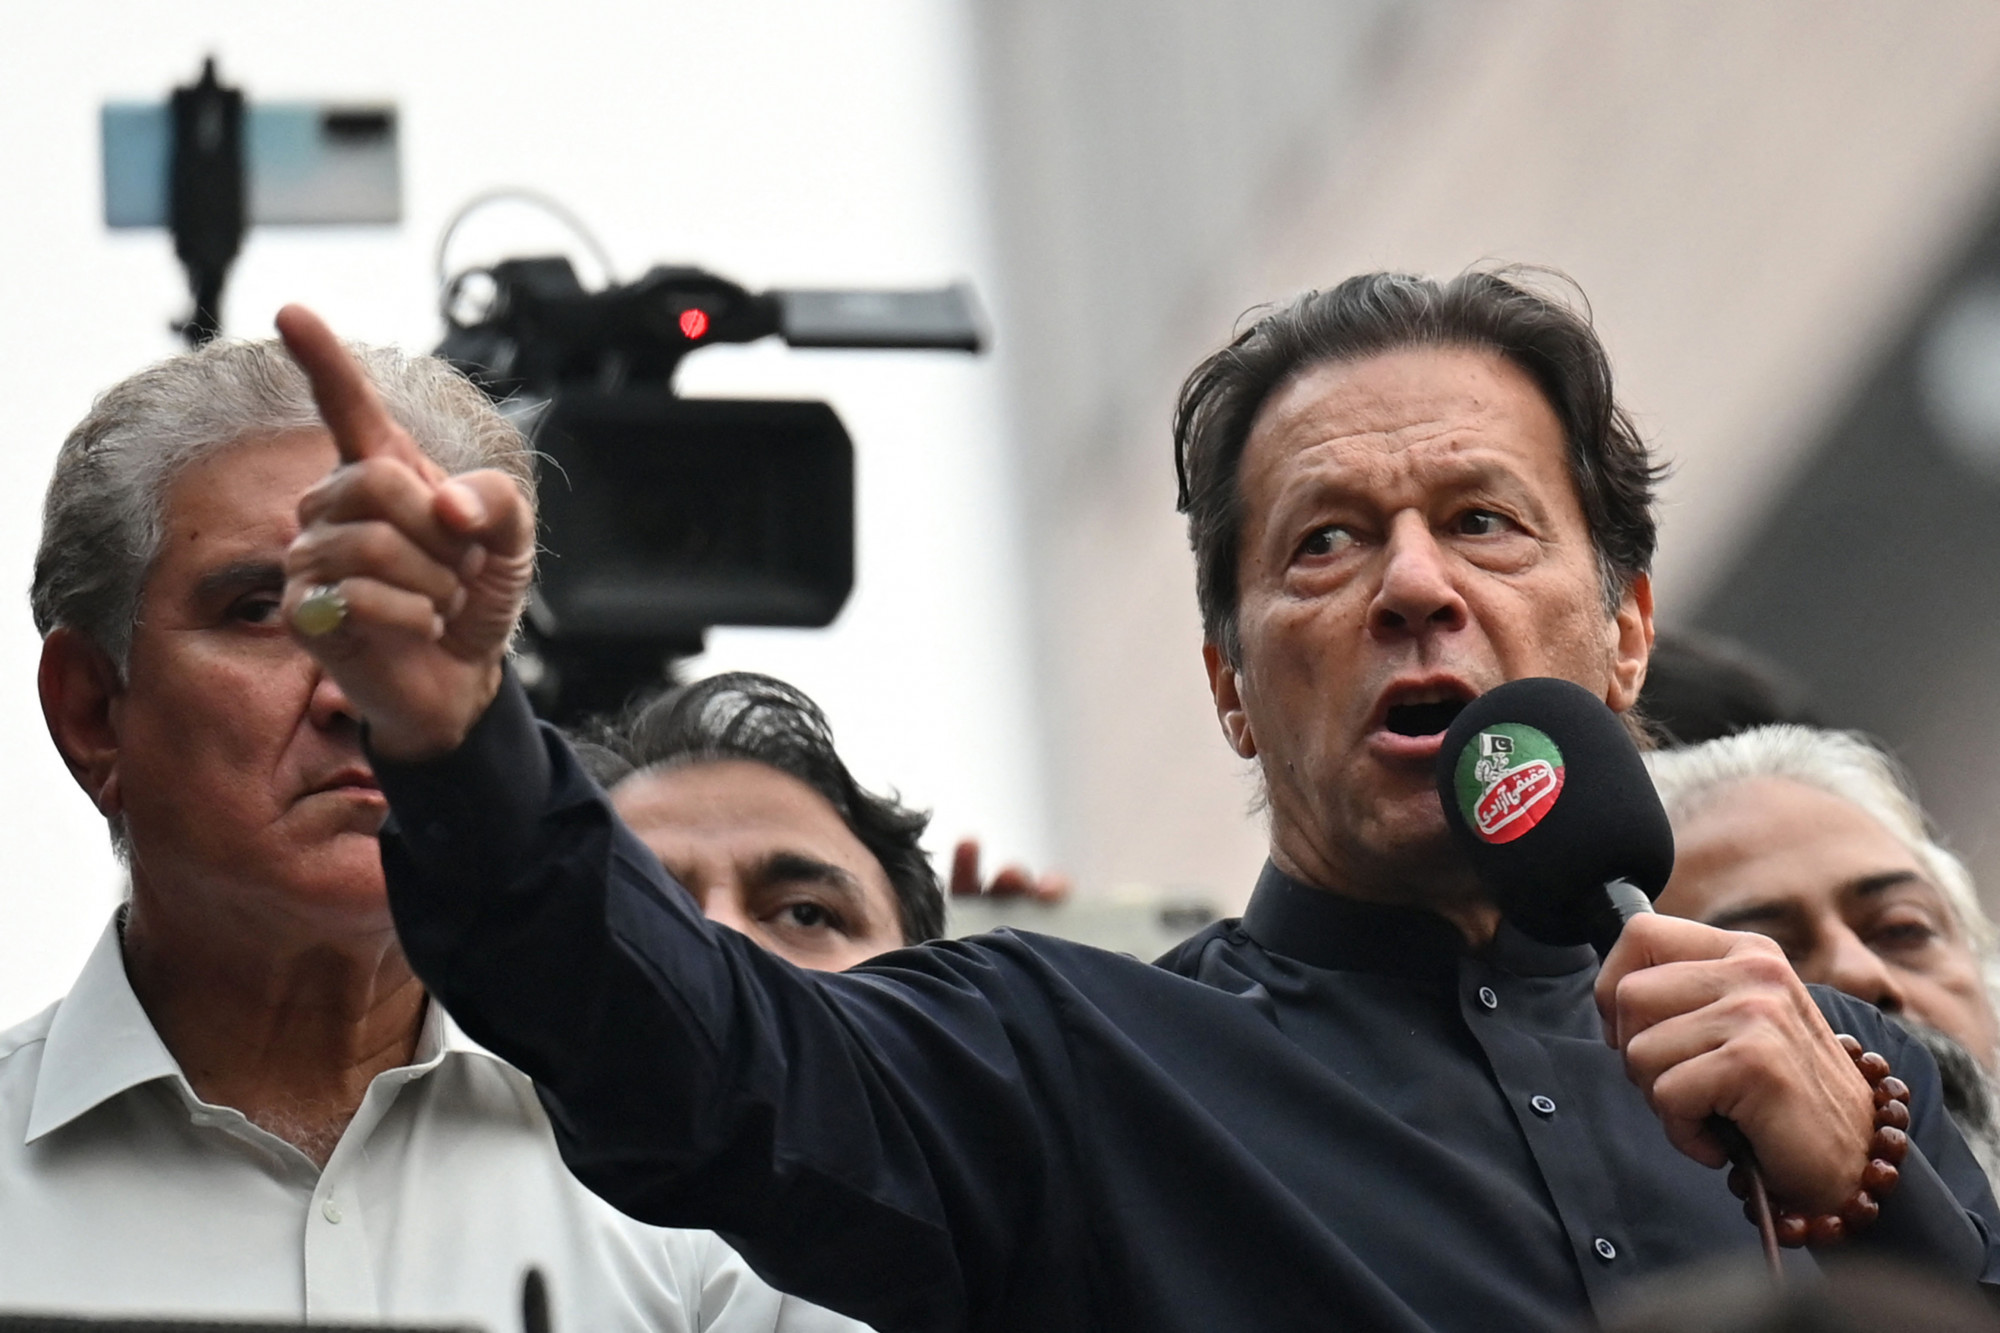 Meglőtték a volt pakisztáni miniszterelnököt egy tiltakozó felvonuláson